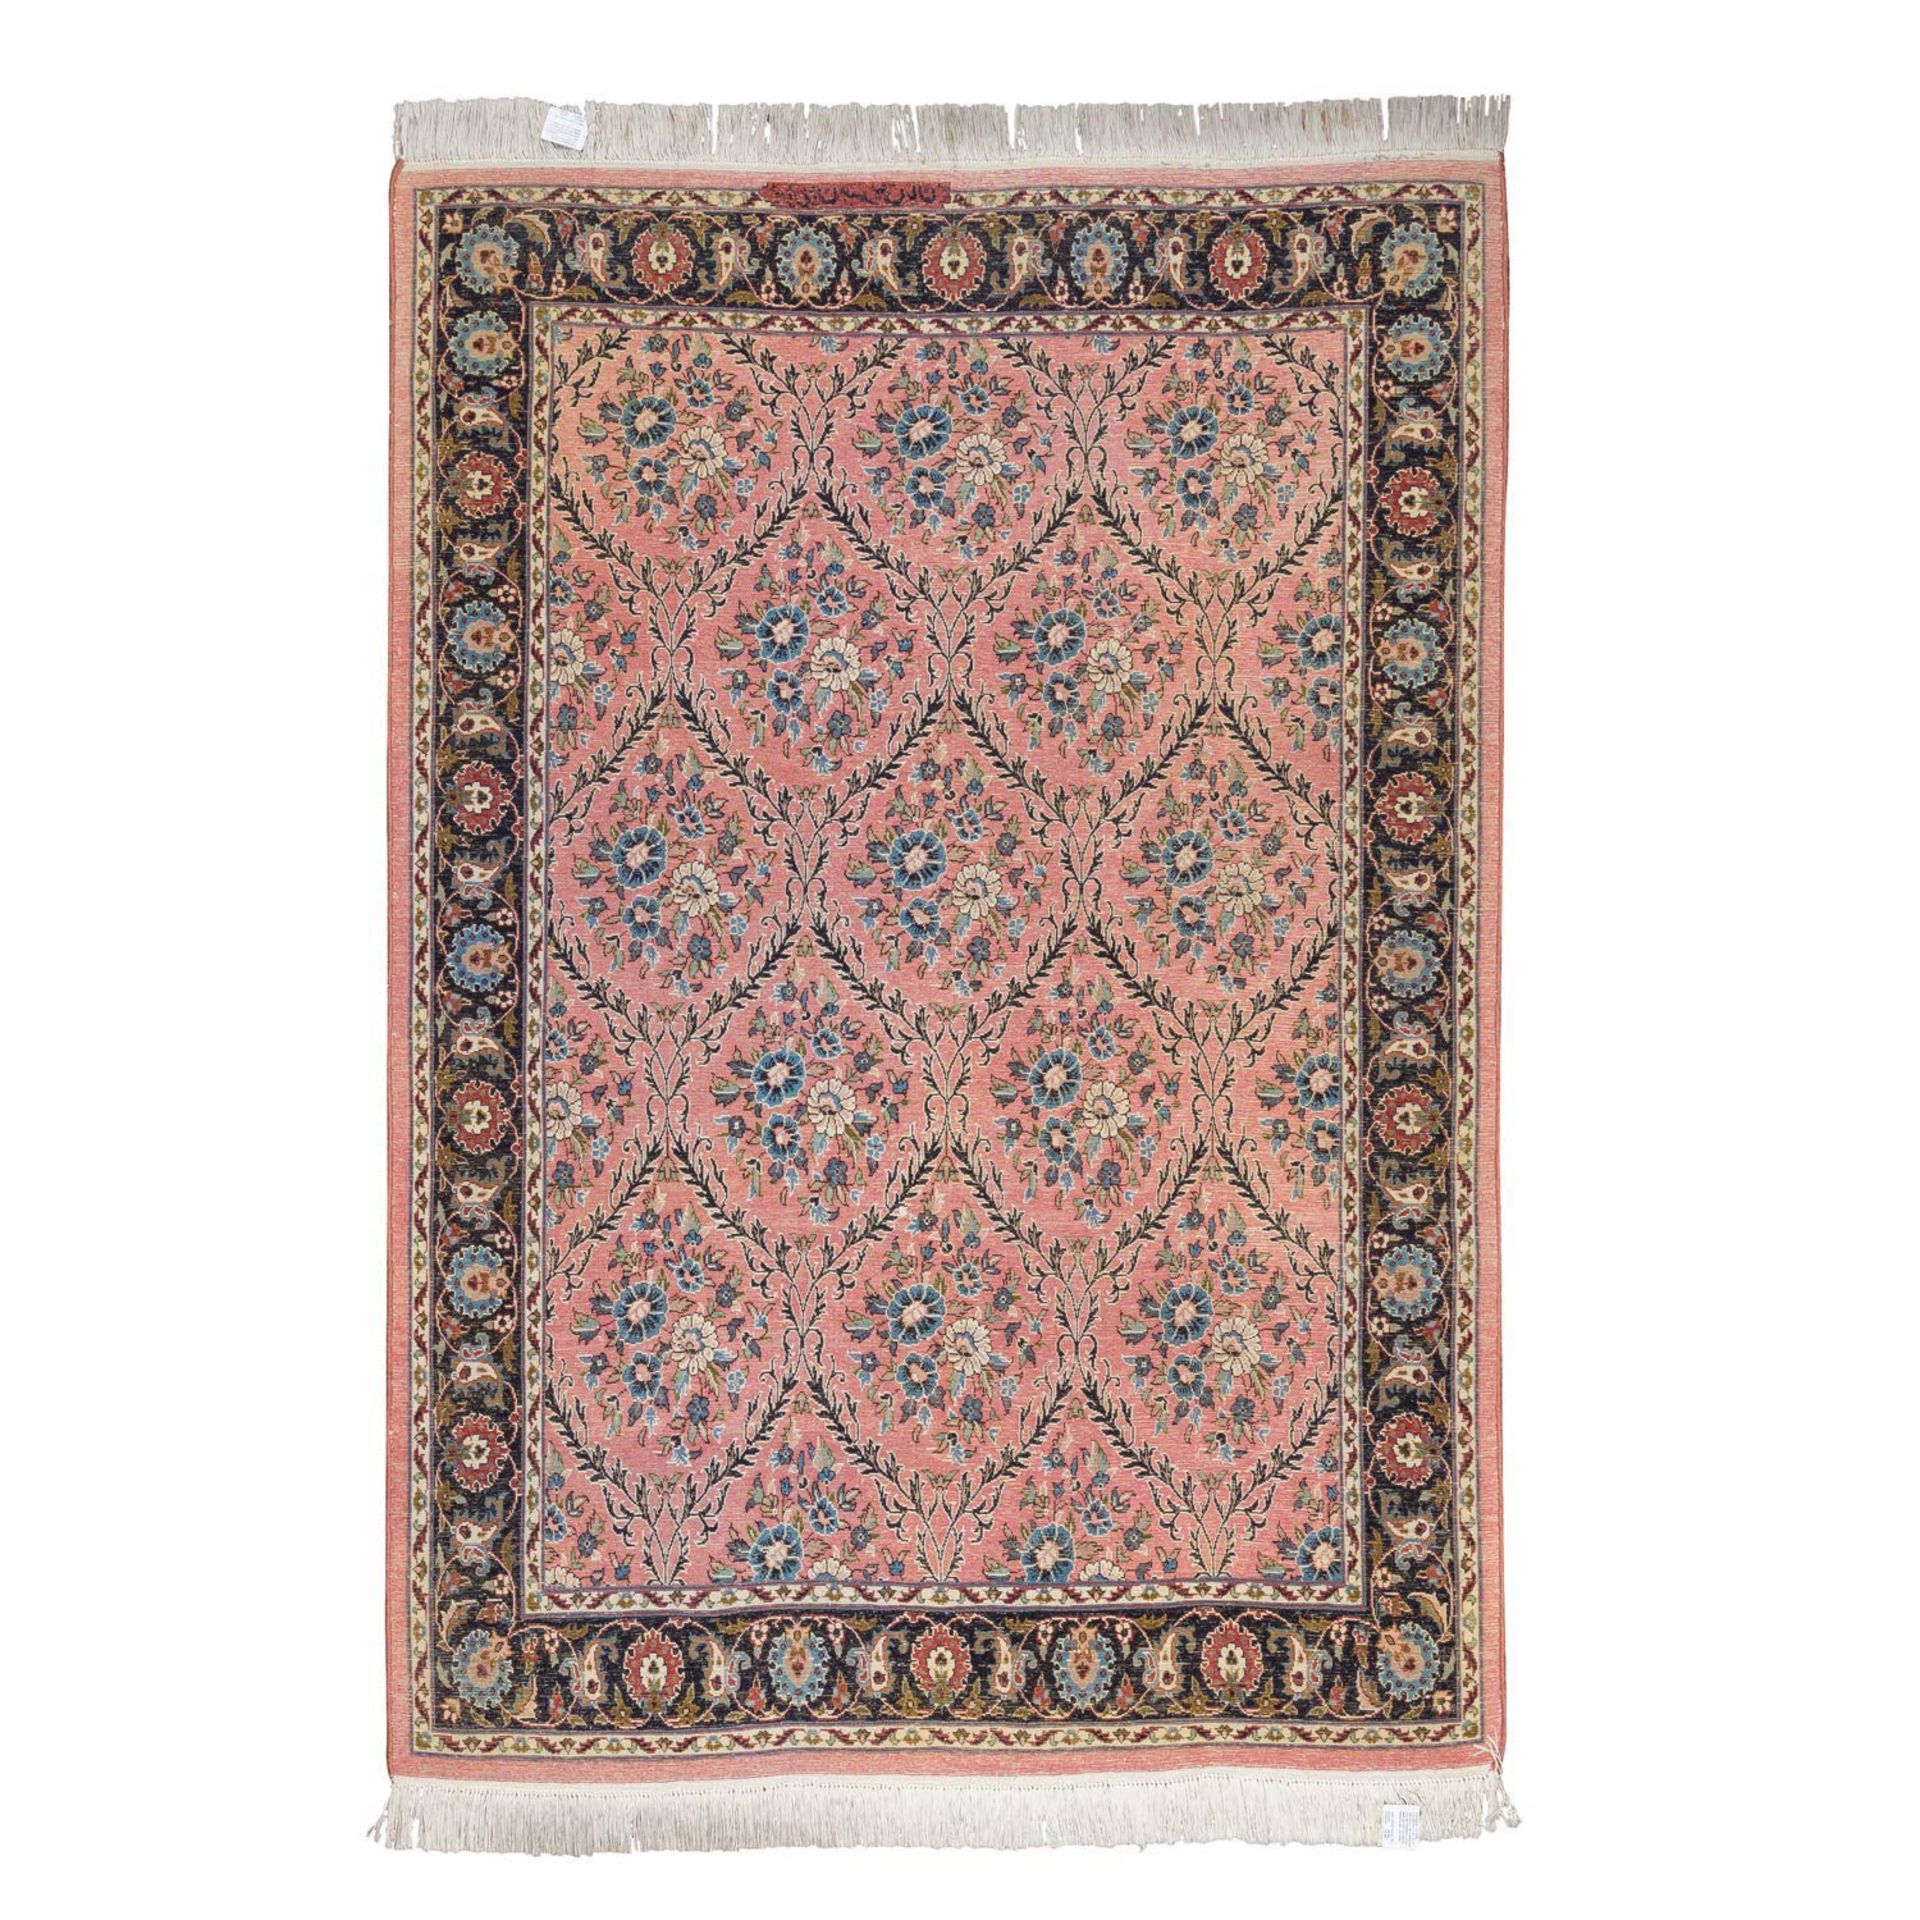 Orientteppich mit Seide. LAHORE/PAKISTAN, 20. Jh., 182x125 cm. - Image 2 of 4